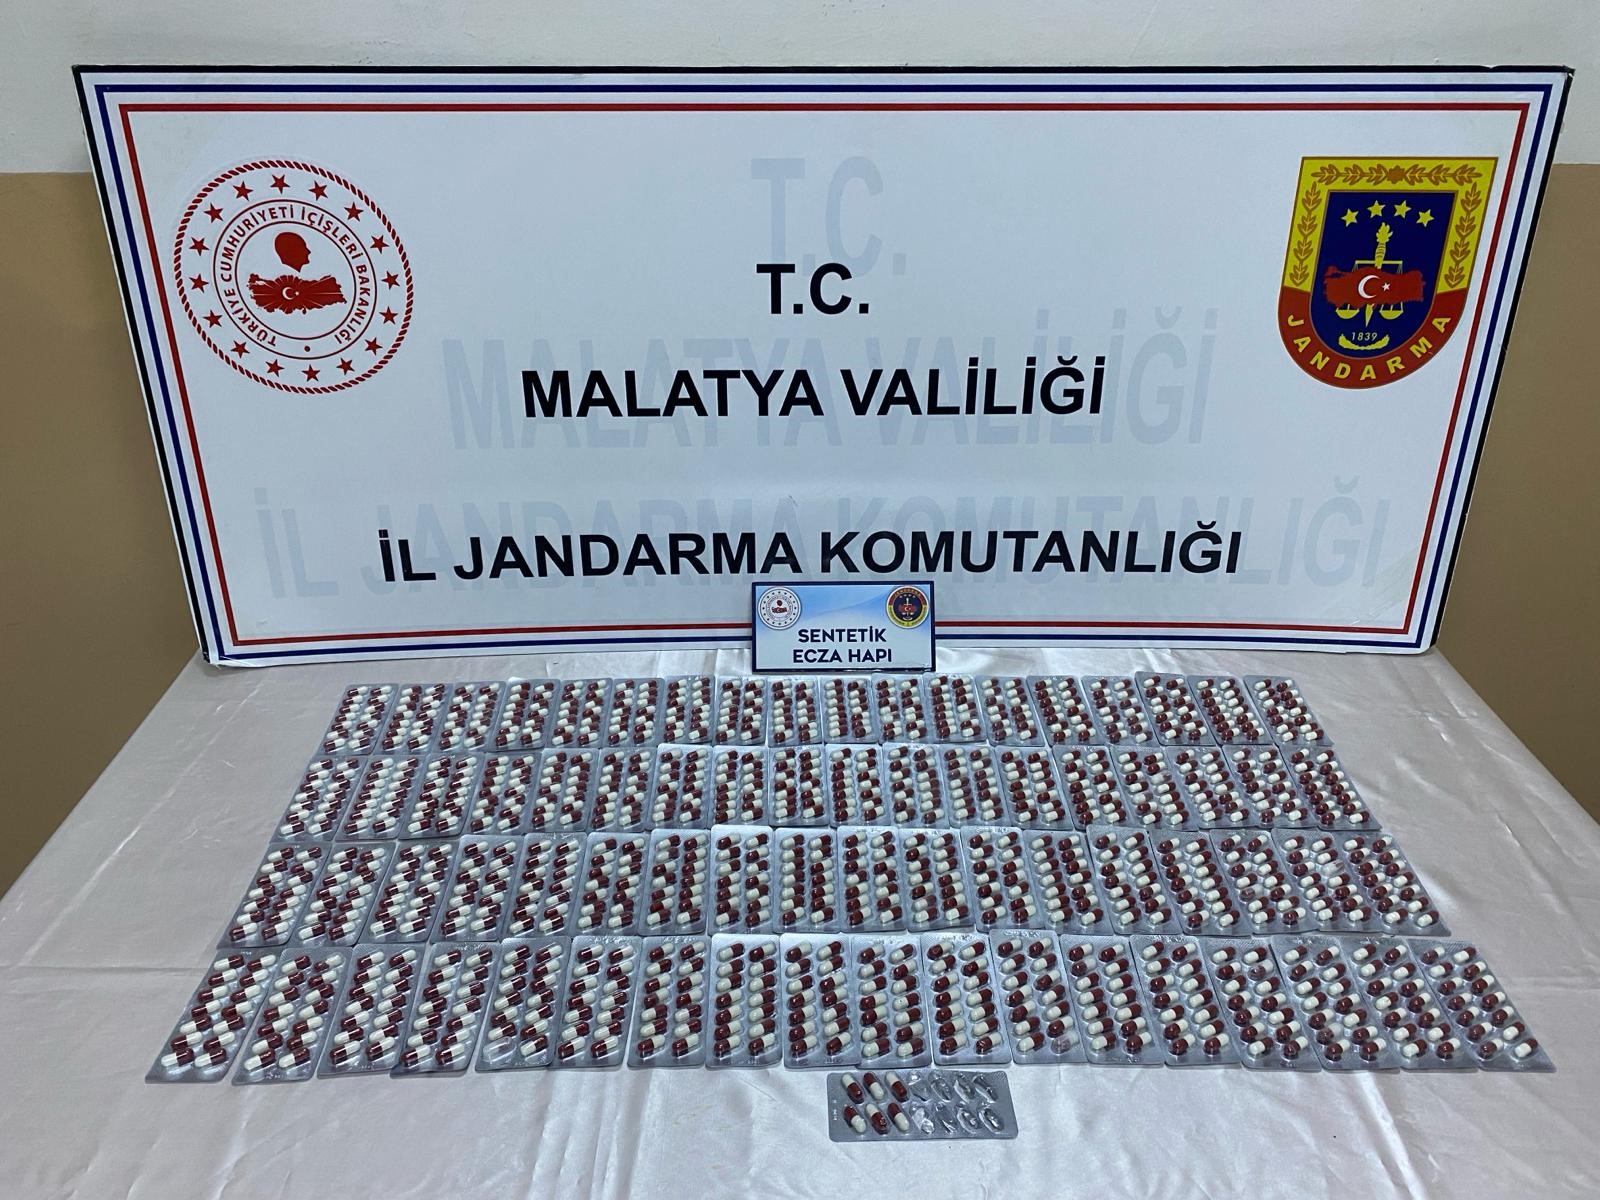 Malatya'da uyuşturucu operasyonu 'Binden fazla sentetik hap ele geçirildi'